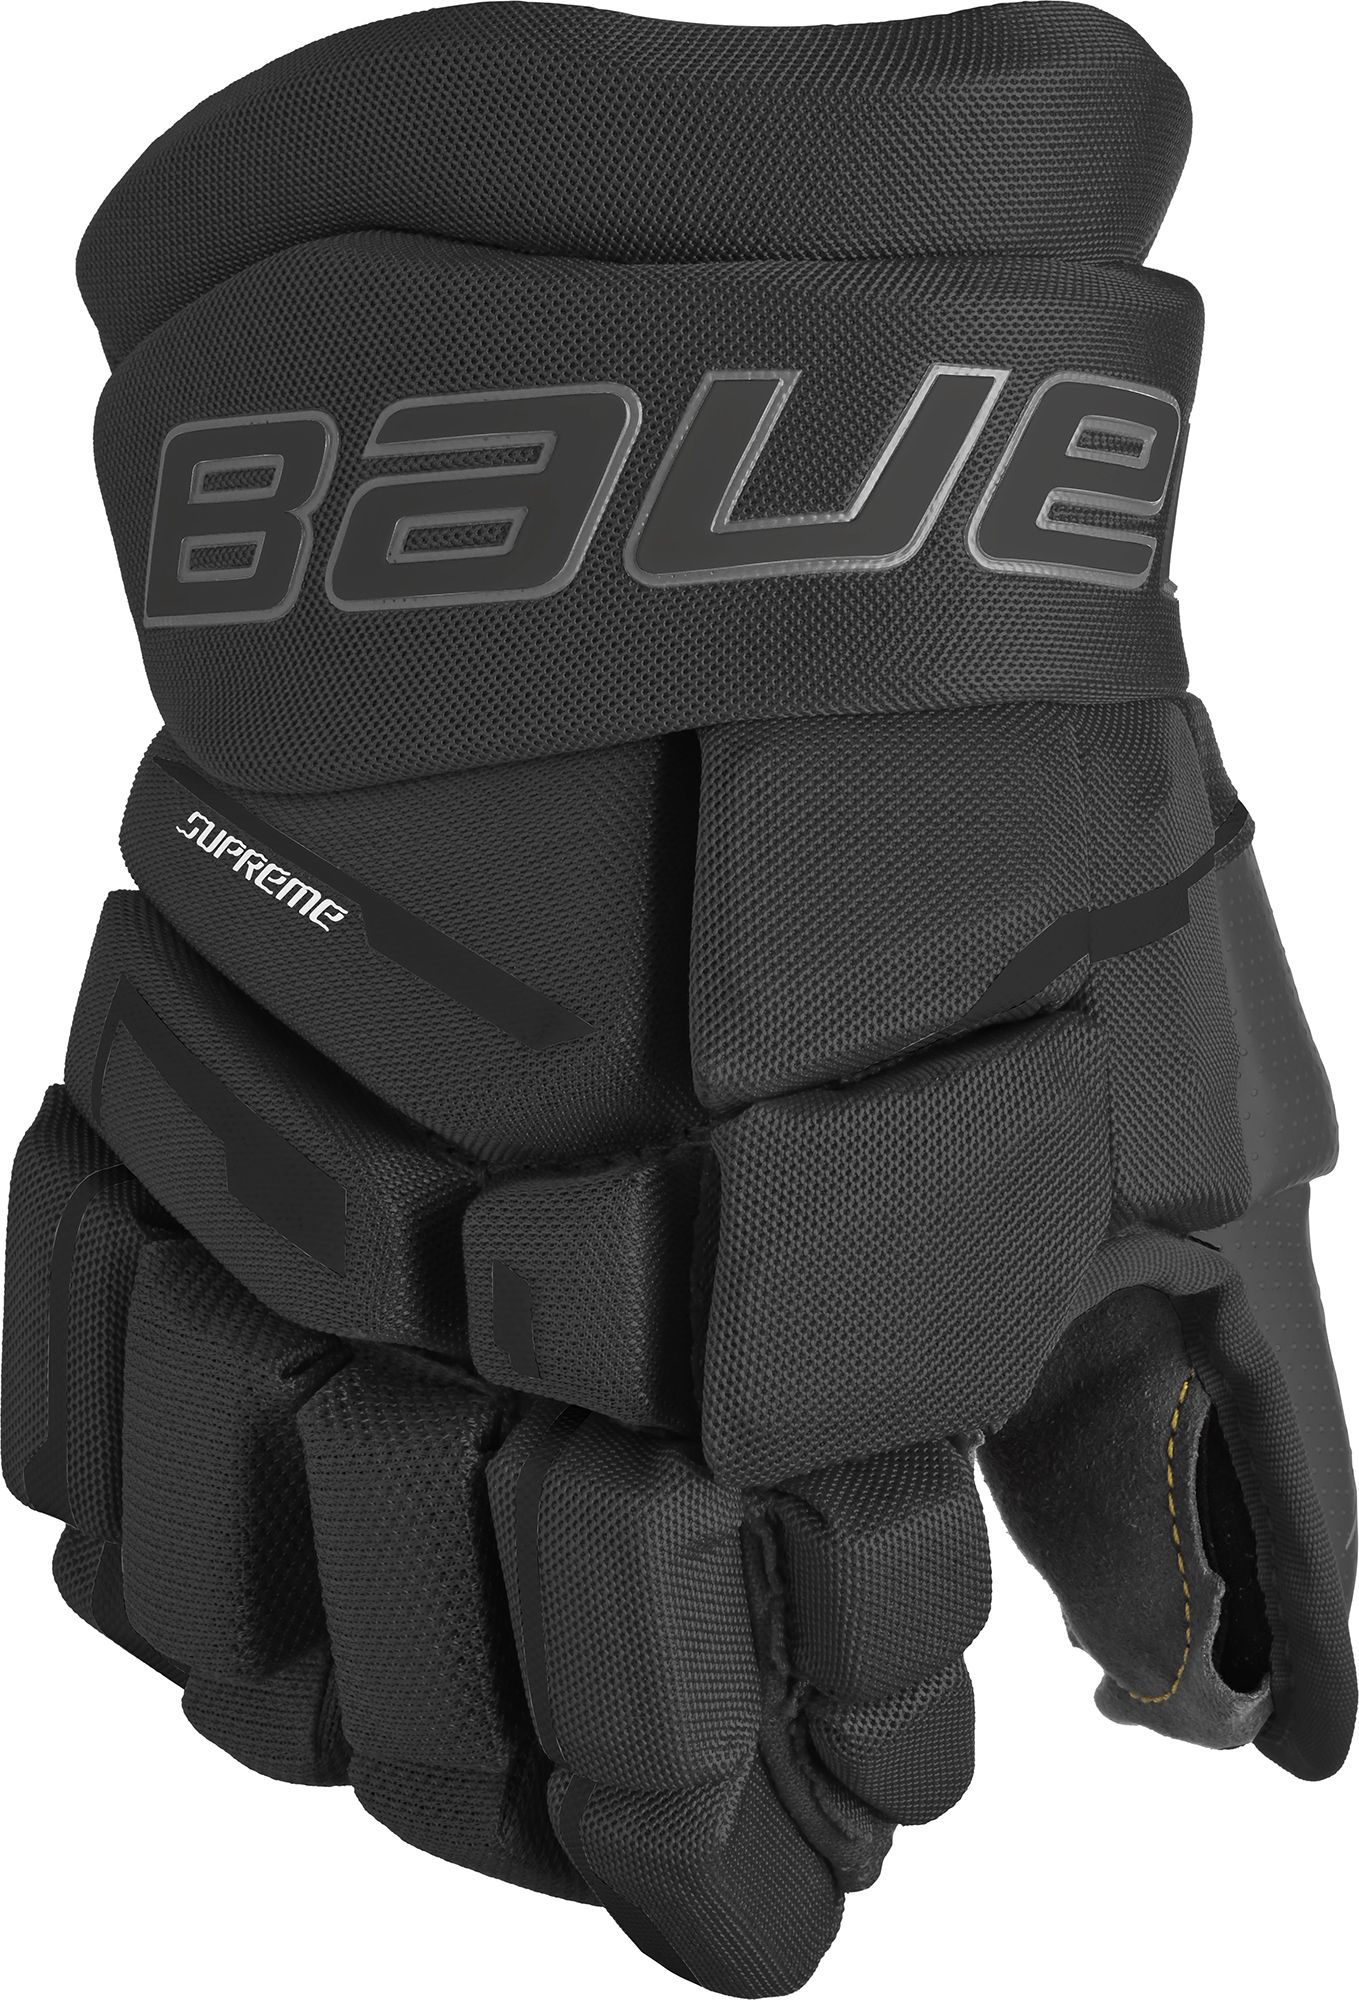 Bauer Supreme M3 Ice Hockey Glove